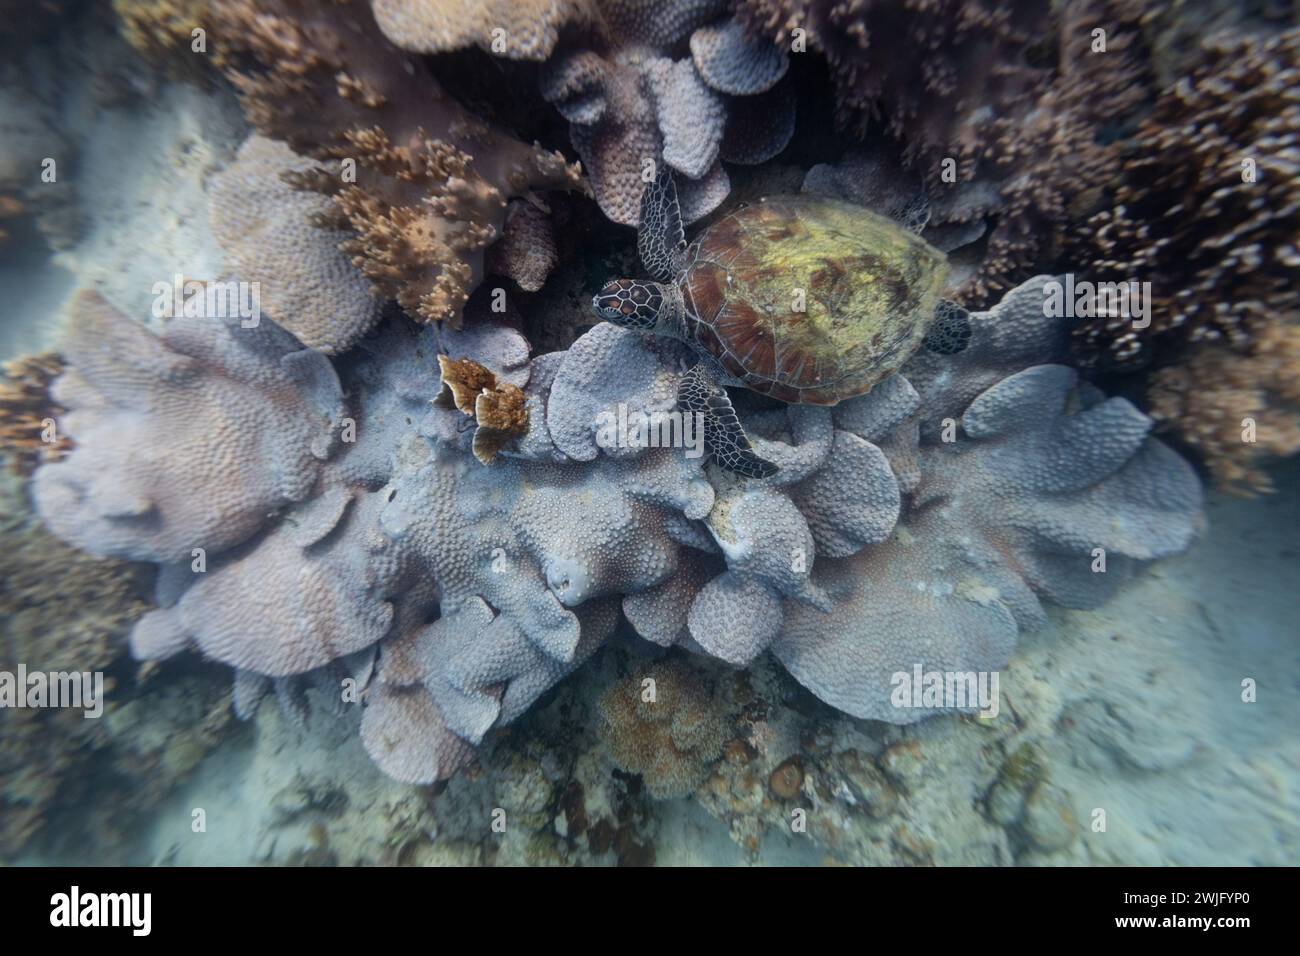 Le tartarughe verdi di mare, Chelonia mydas, riposano su una barriera corallina tropicale Foto Stock